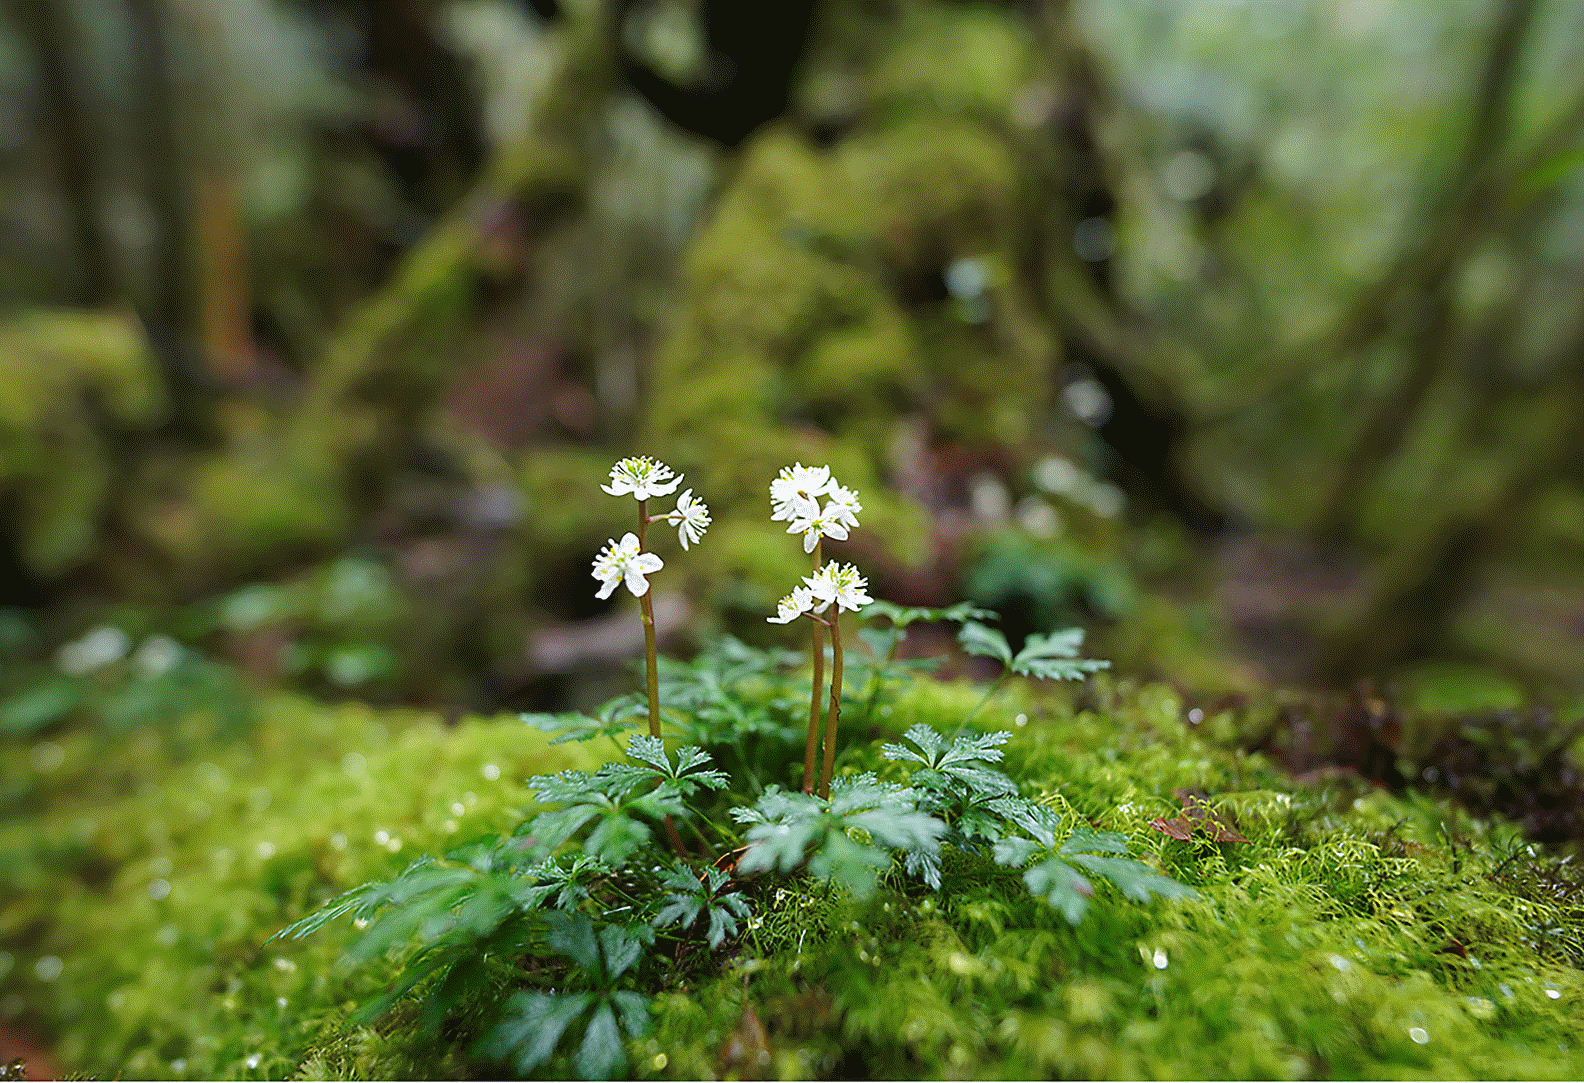 Ön ve arkada büyük bir bulanık alan ile birlikte ormanda bulunan bir kayadaki küçük bir çiçeğin netlenmiş görüntüsü